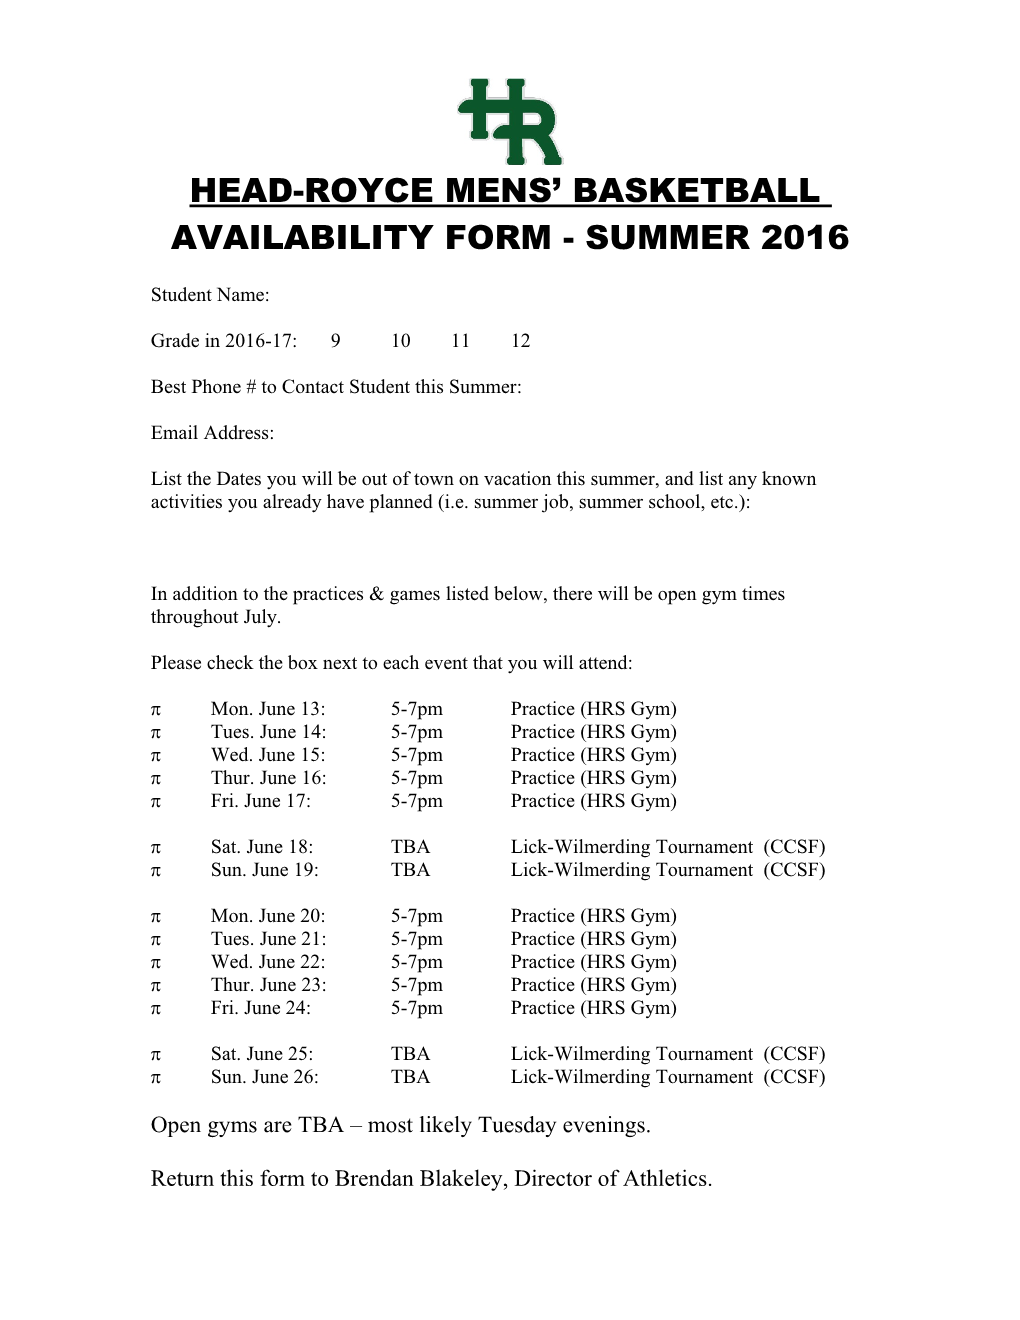 Urban Boys Basketball Summer Availability Form